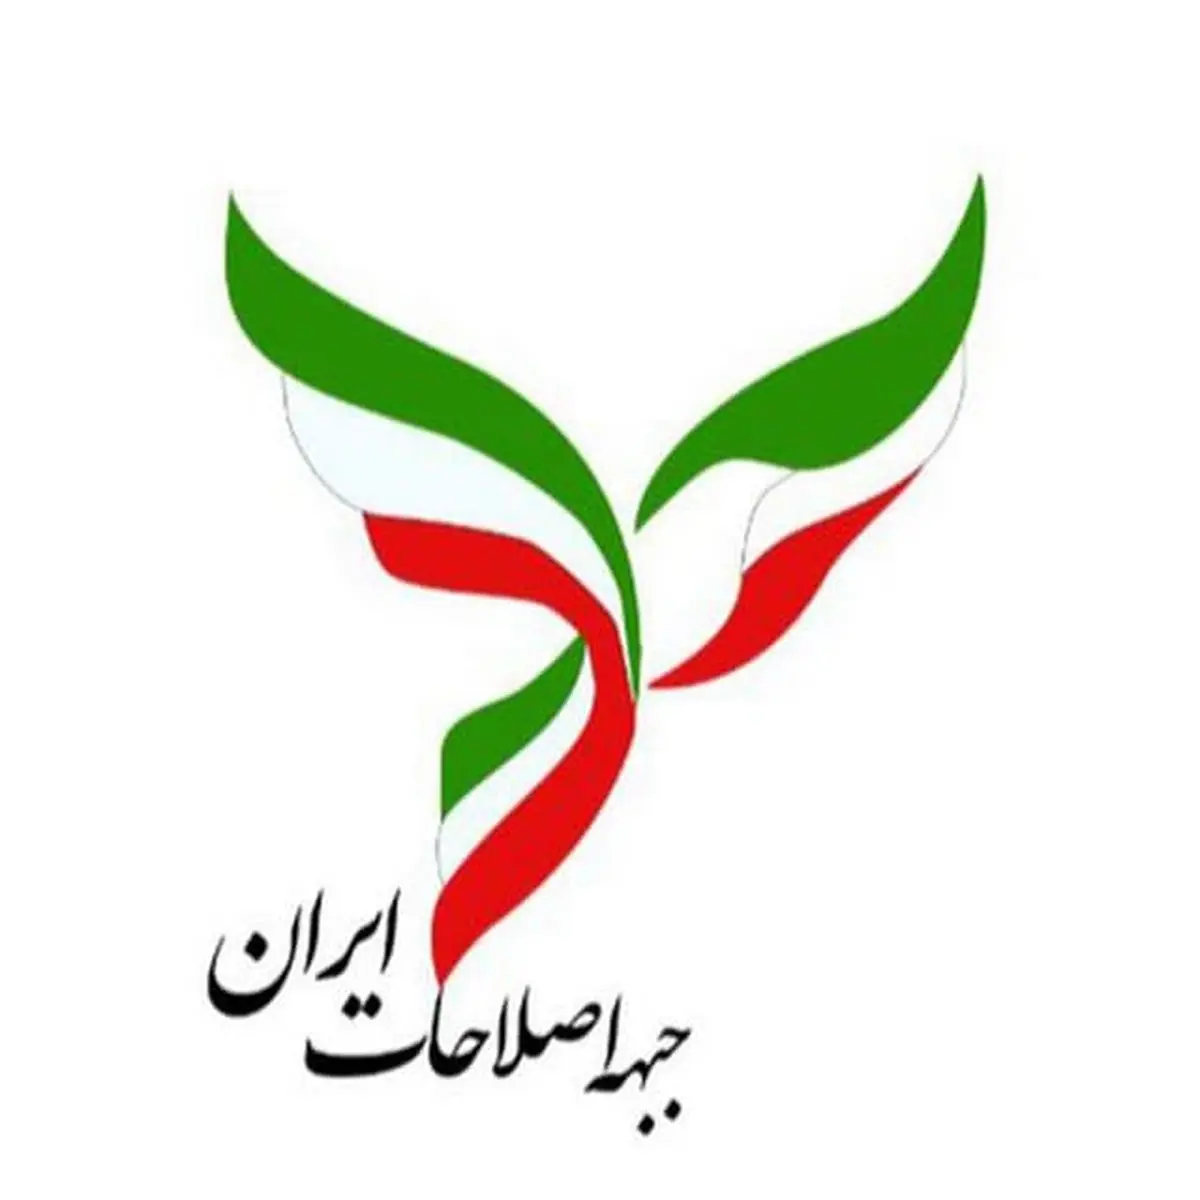  سند راهبرد انتخاباتى جبهه اصلاحات ایران با اکثریت آرا به تصویب رسید